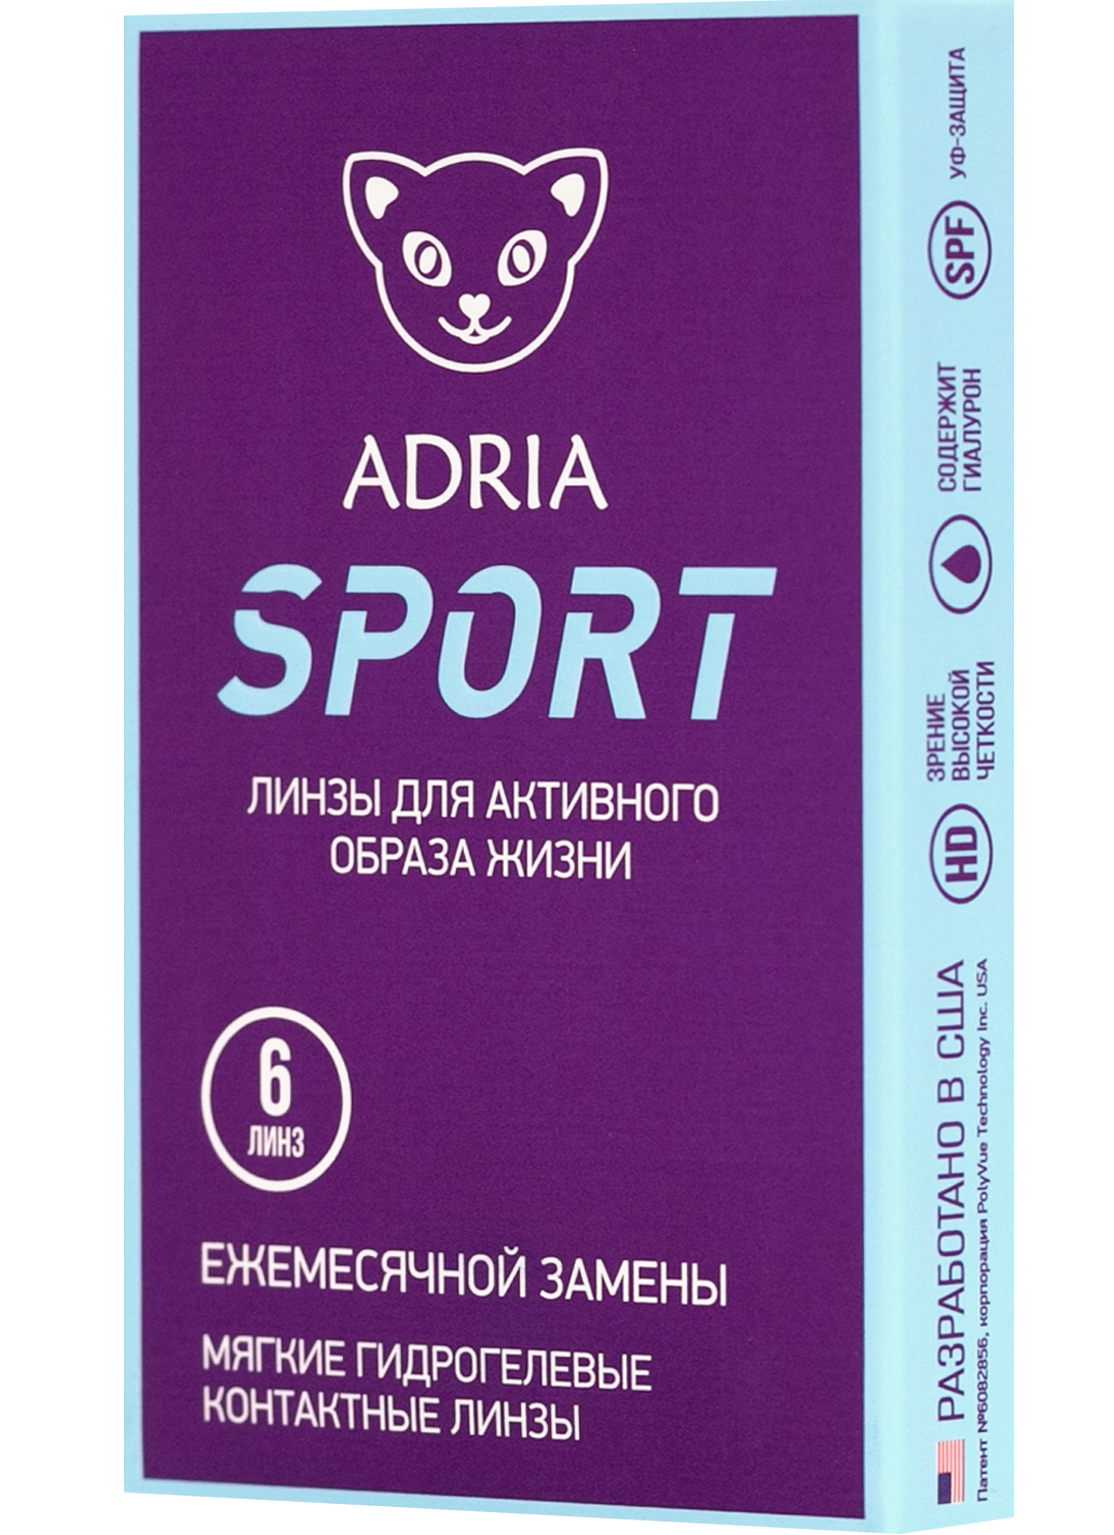 Ежемесячные линзы Adria Sport